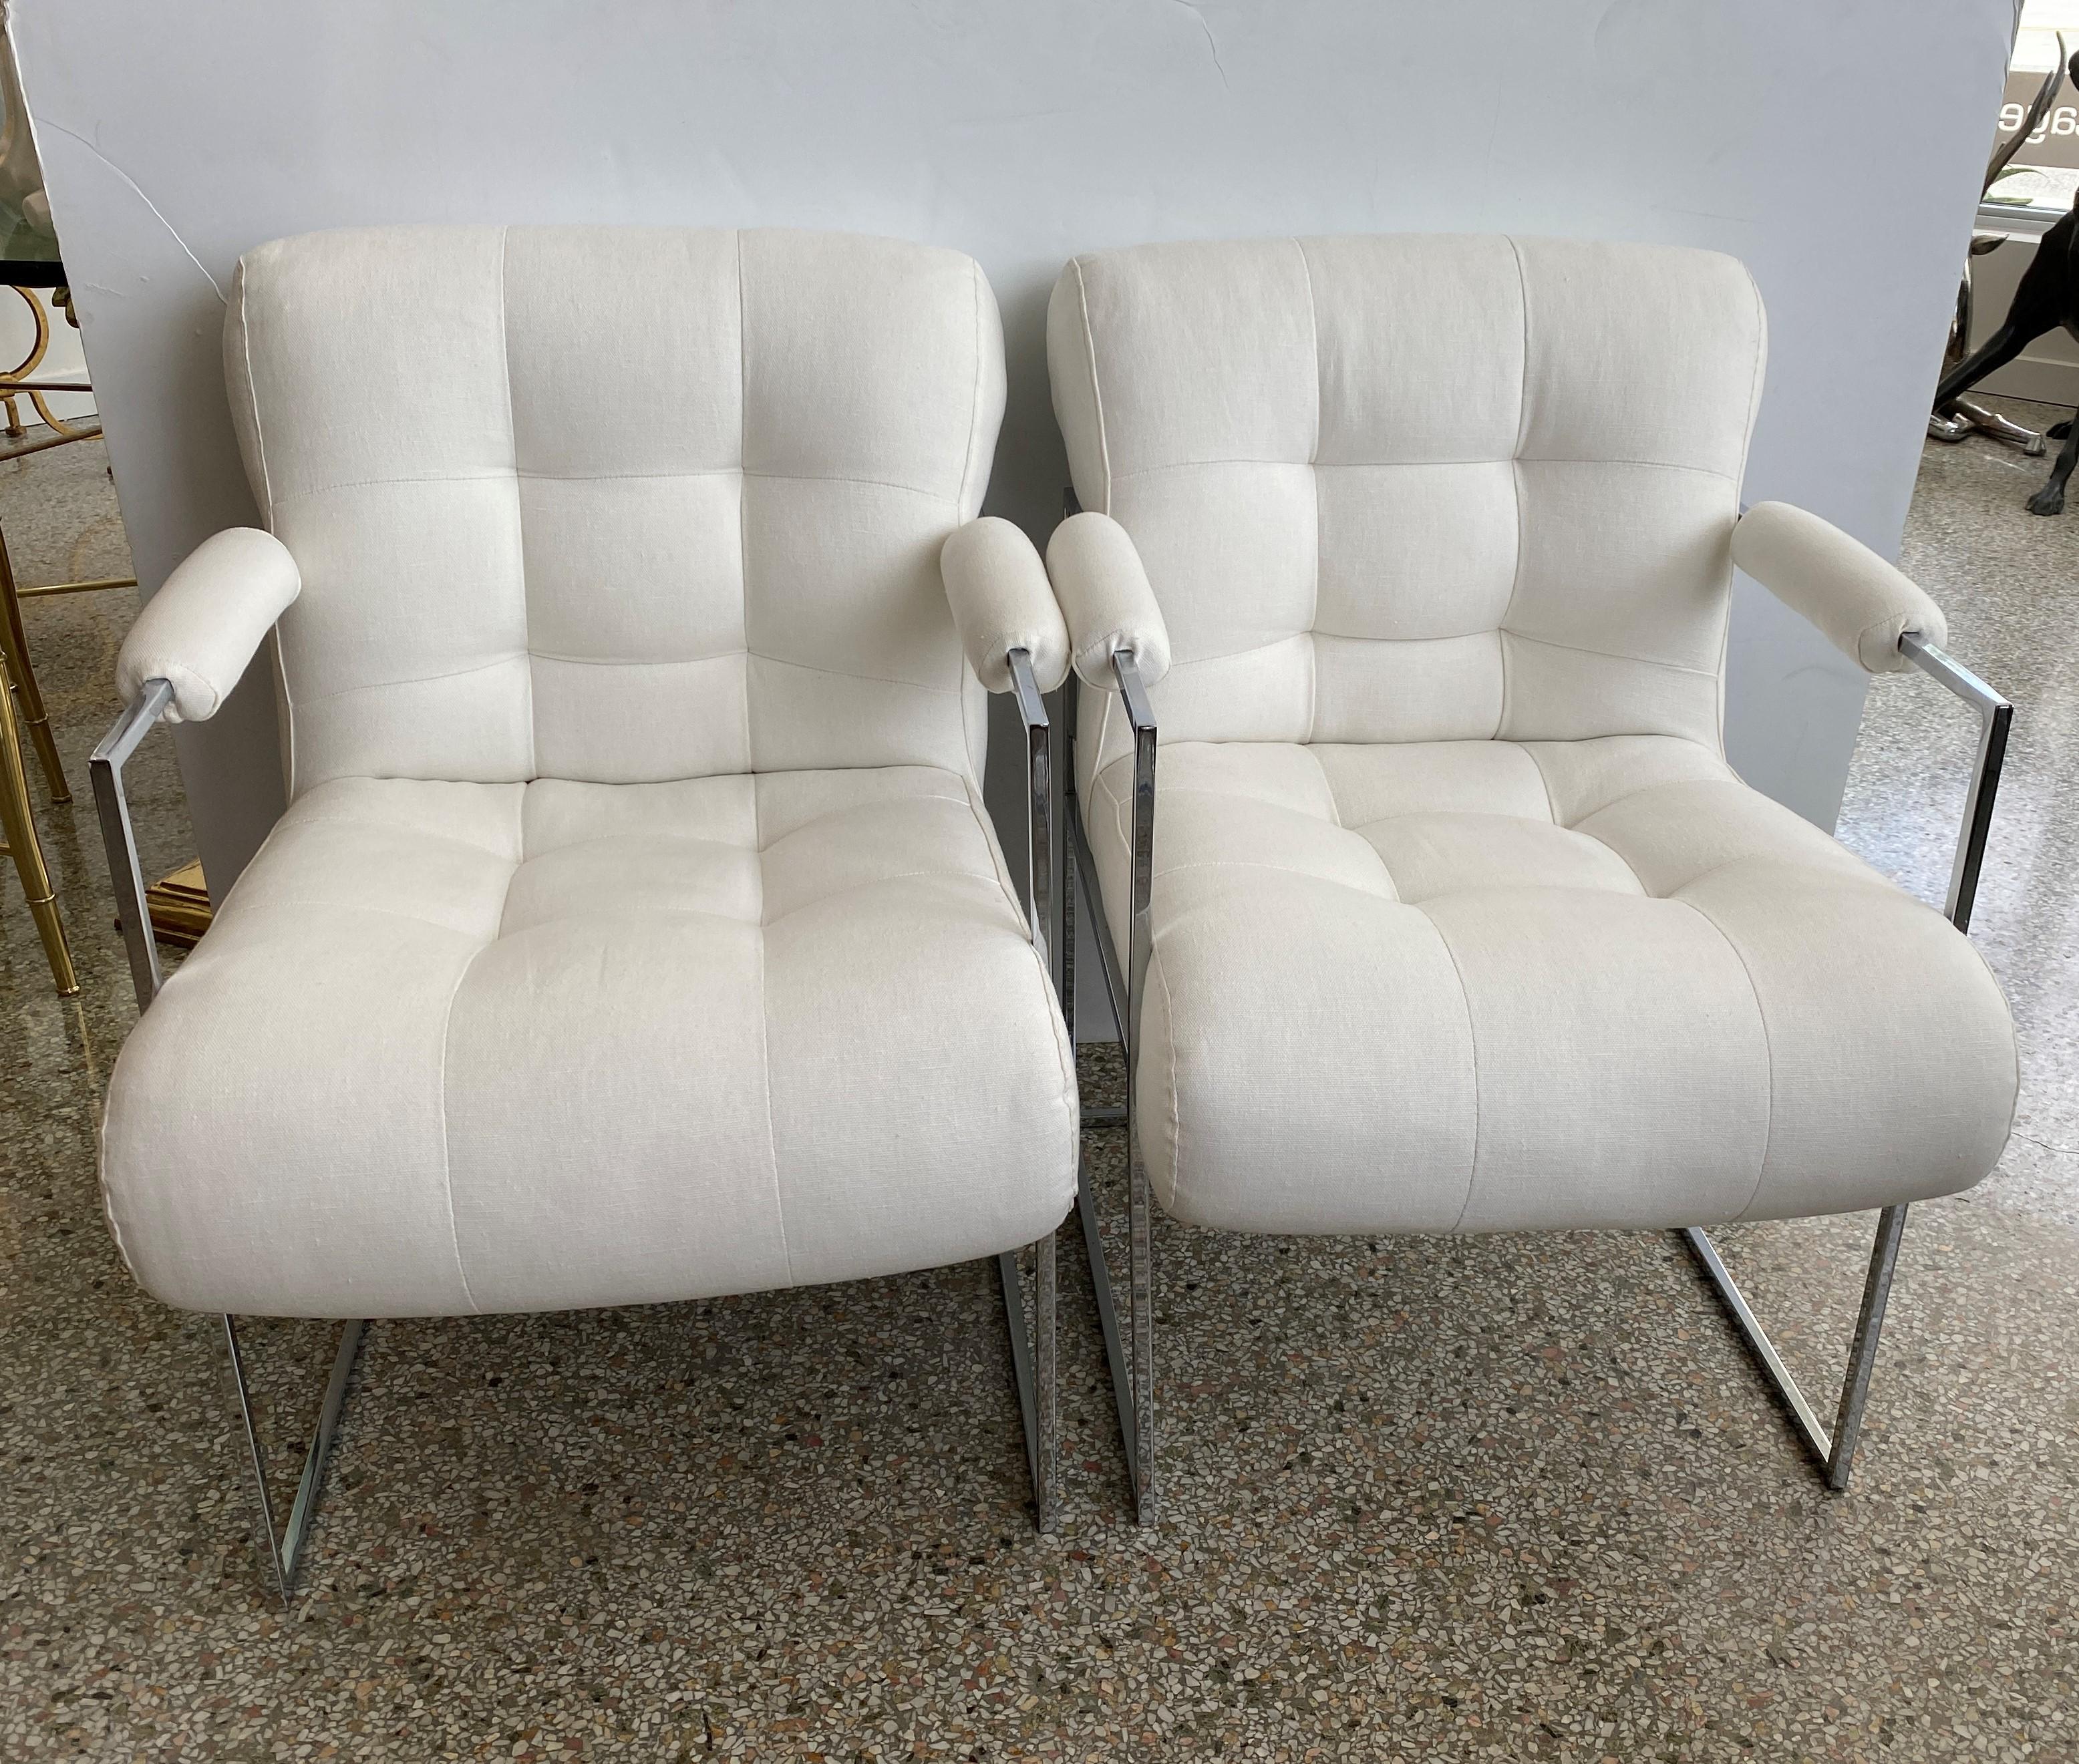 Cette élégante paire de chaises des années 1970 a été conçue par Milo Baughman pour sa collection 